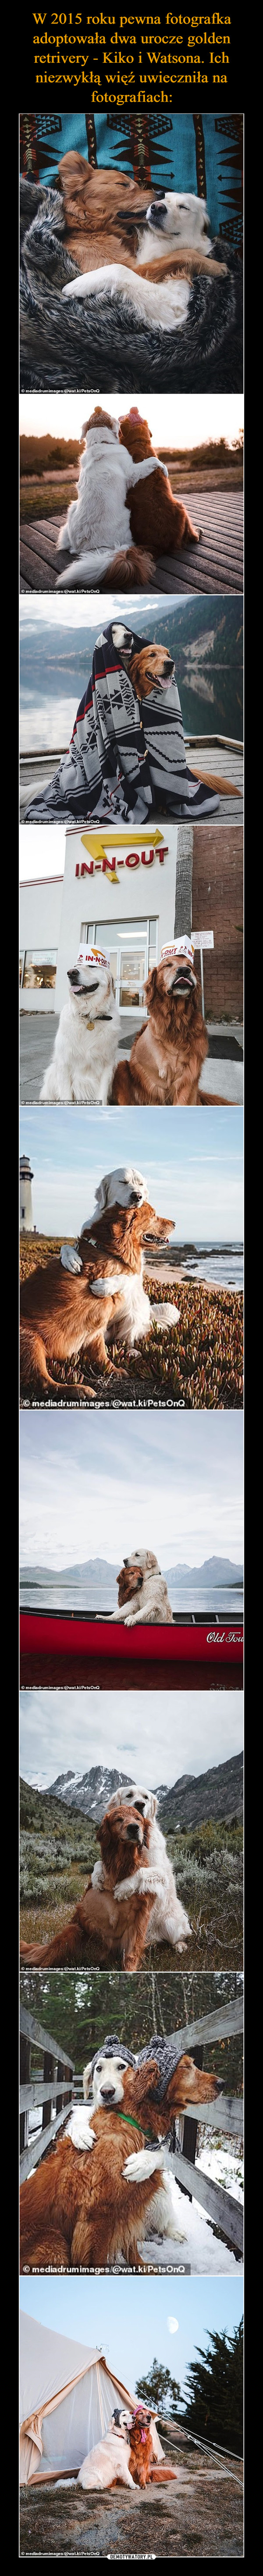 W 2015 roku pewna fotografka adoptowała dwa urocze golden retrivery - Kiko i Watsona. Ich niezwykłą więź uwieczniła na fotografiach: